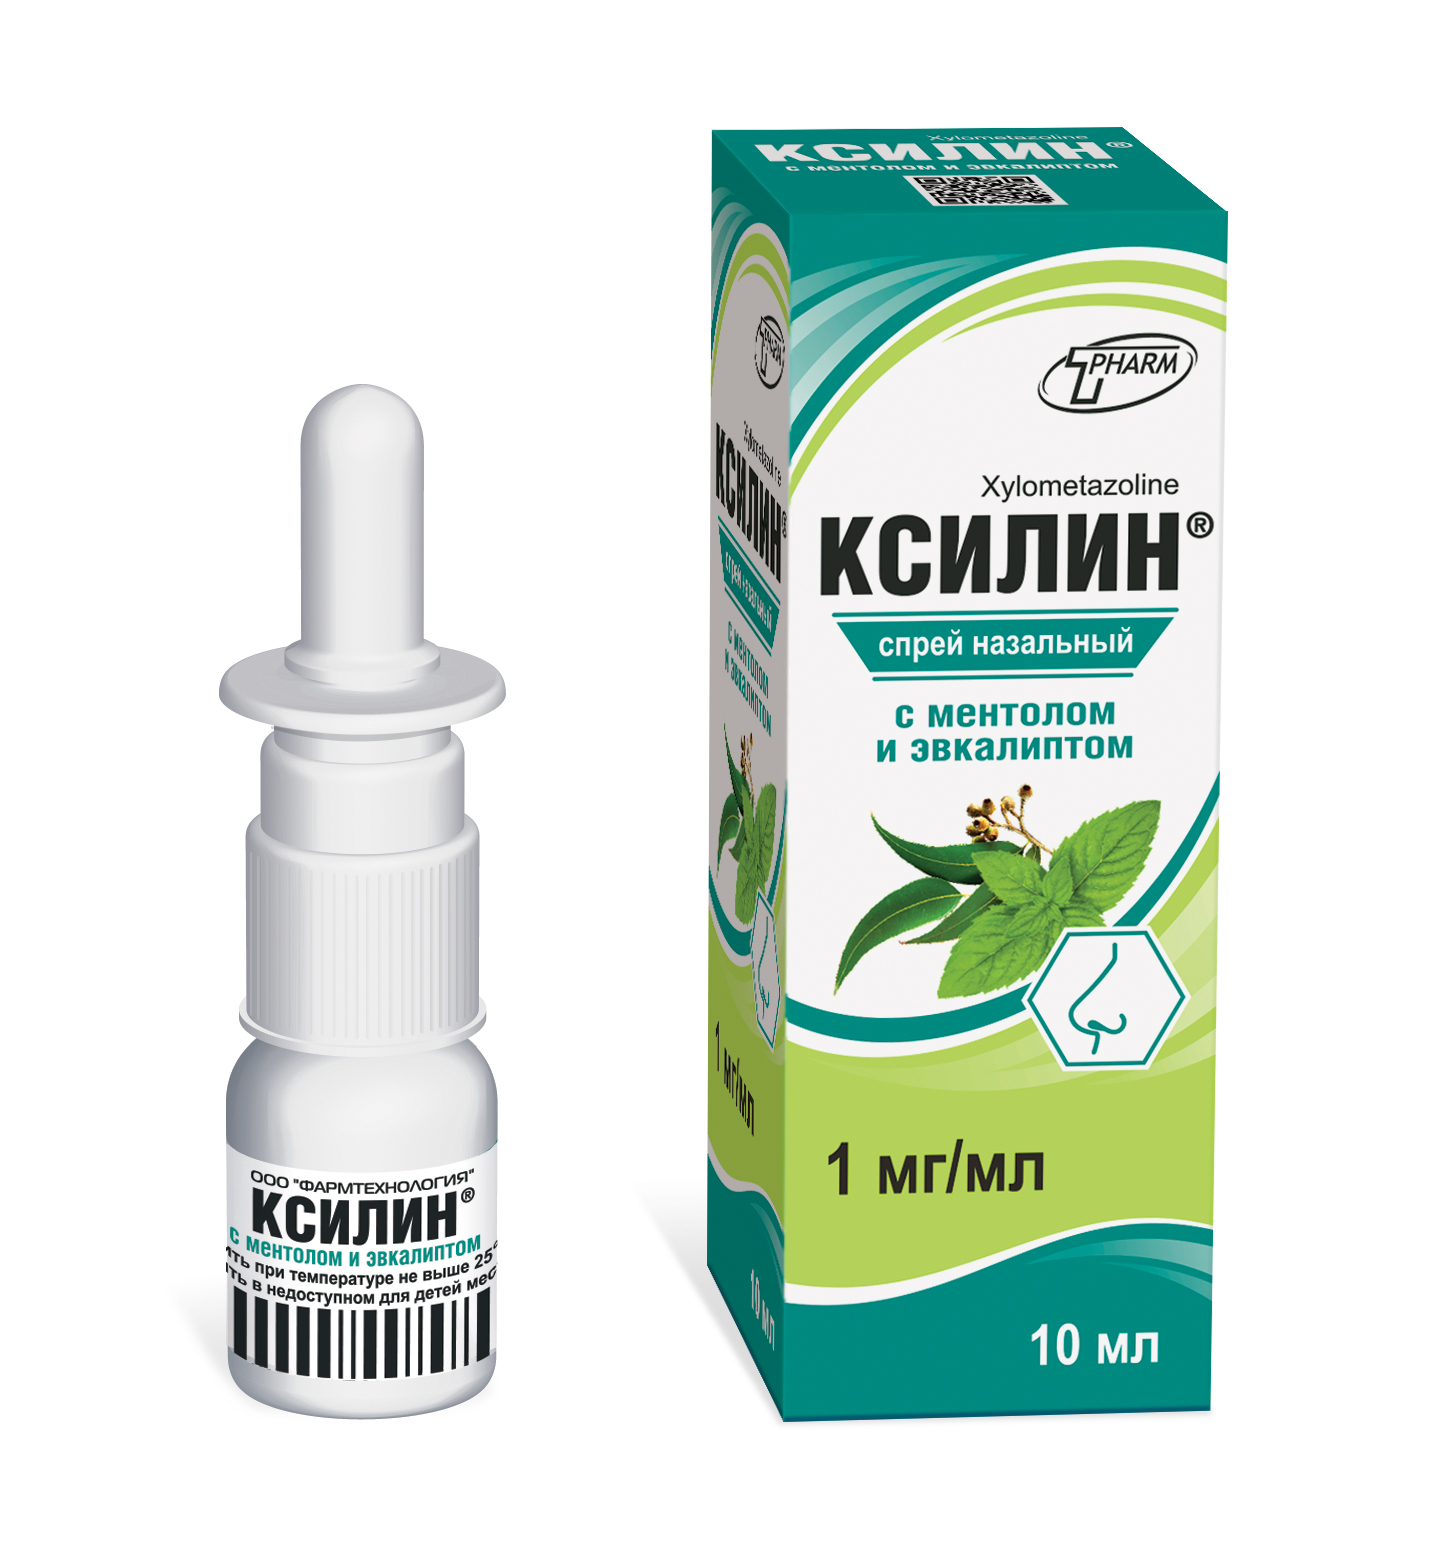 Ксилин® с ментолом и эвкалиптом